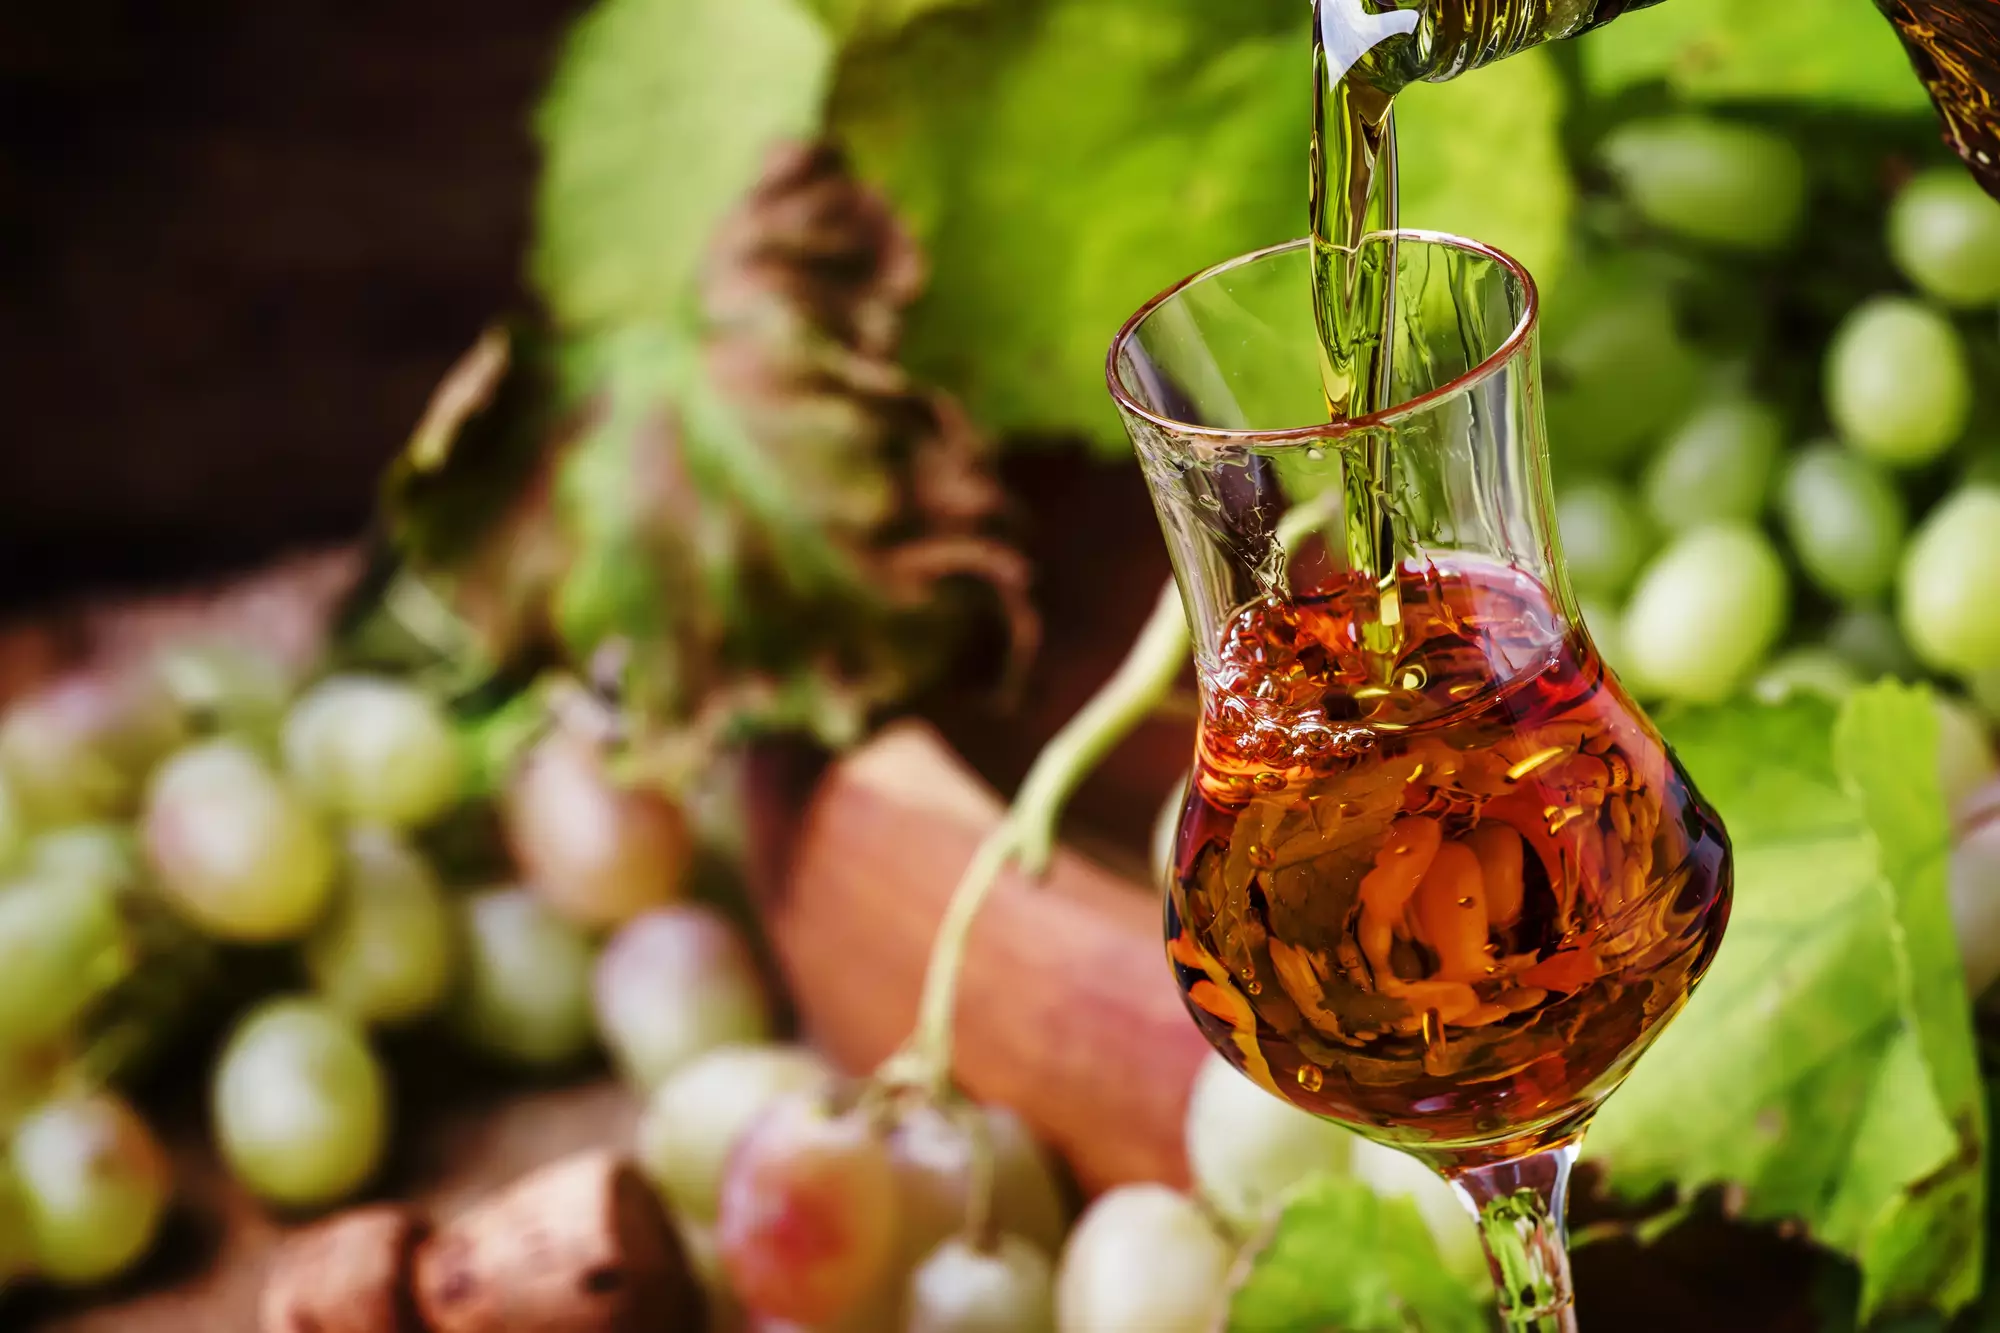 Домашнее вино из винограда изабелла